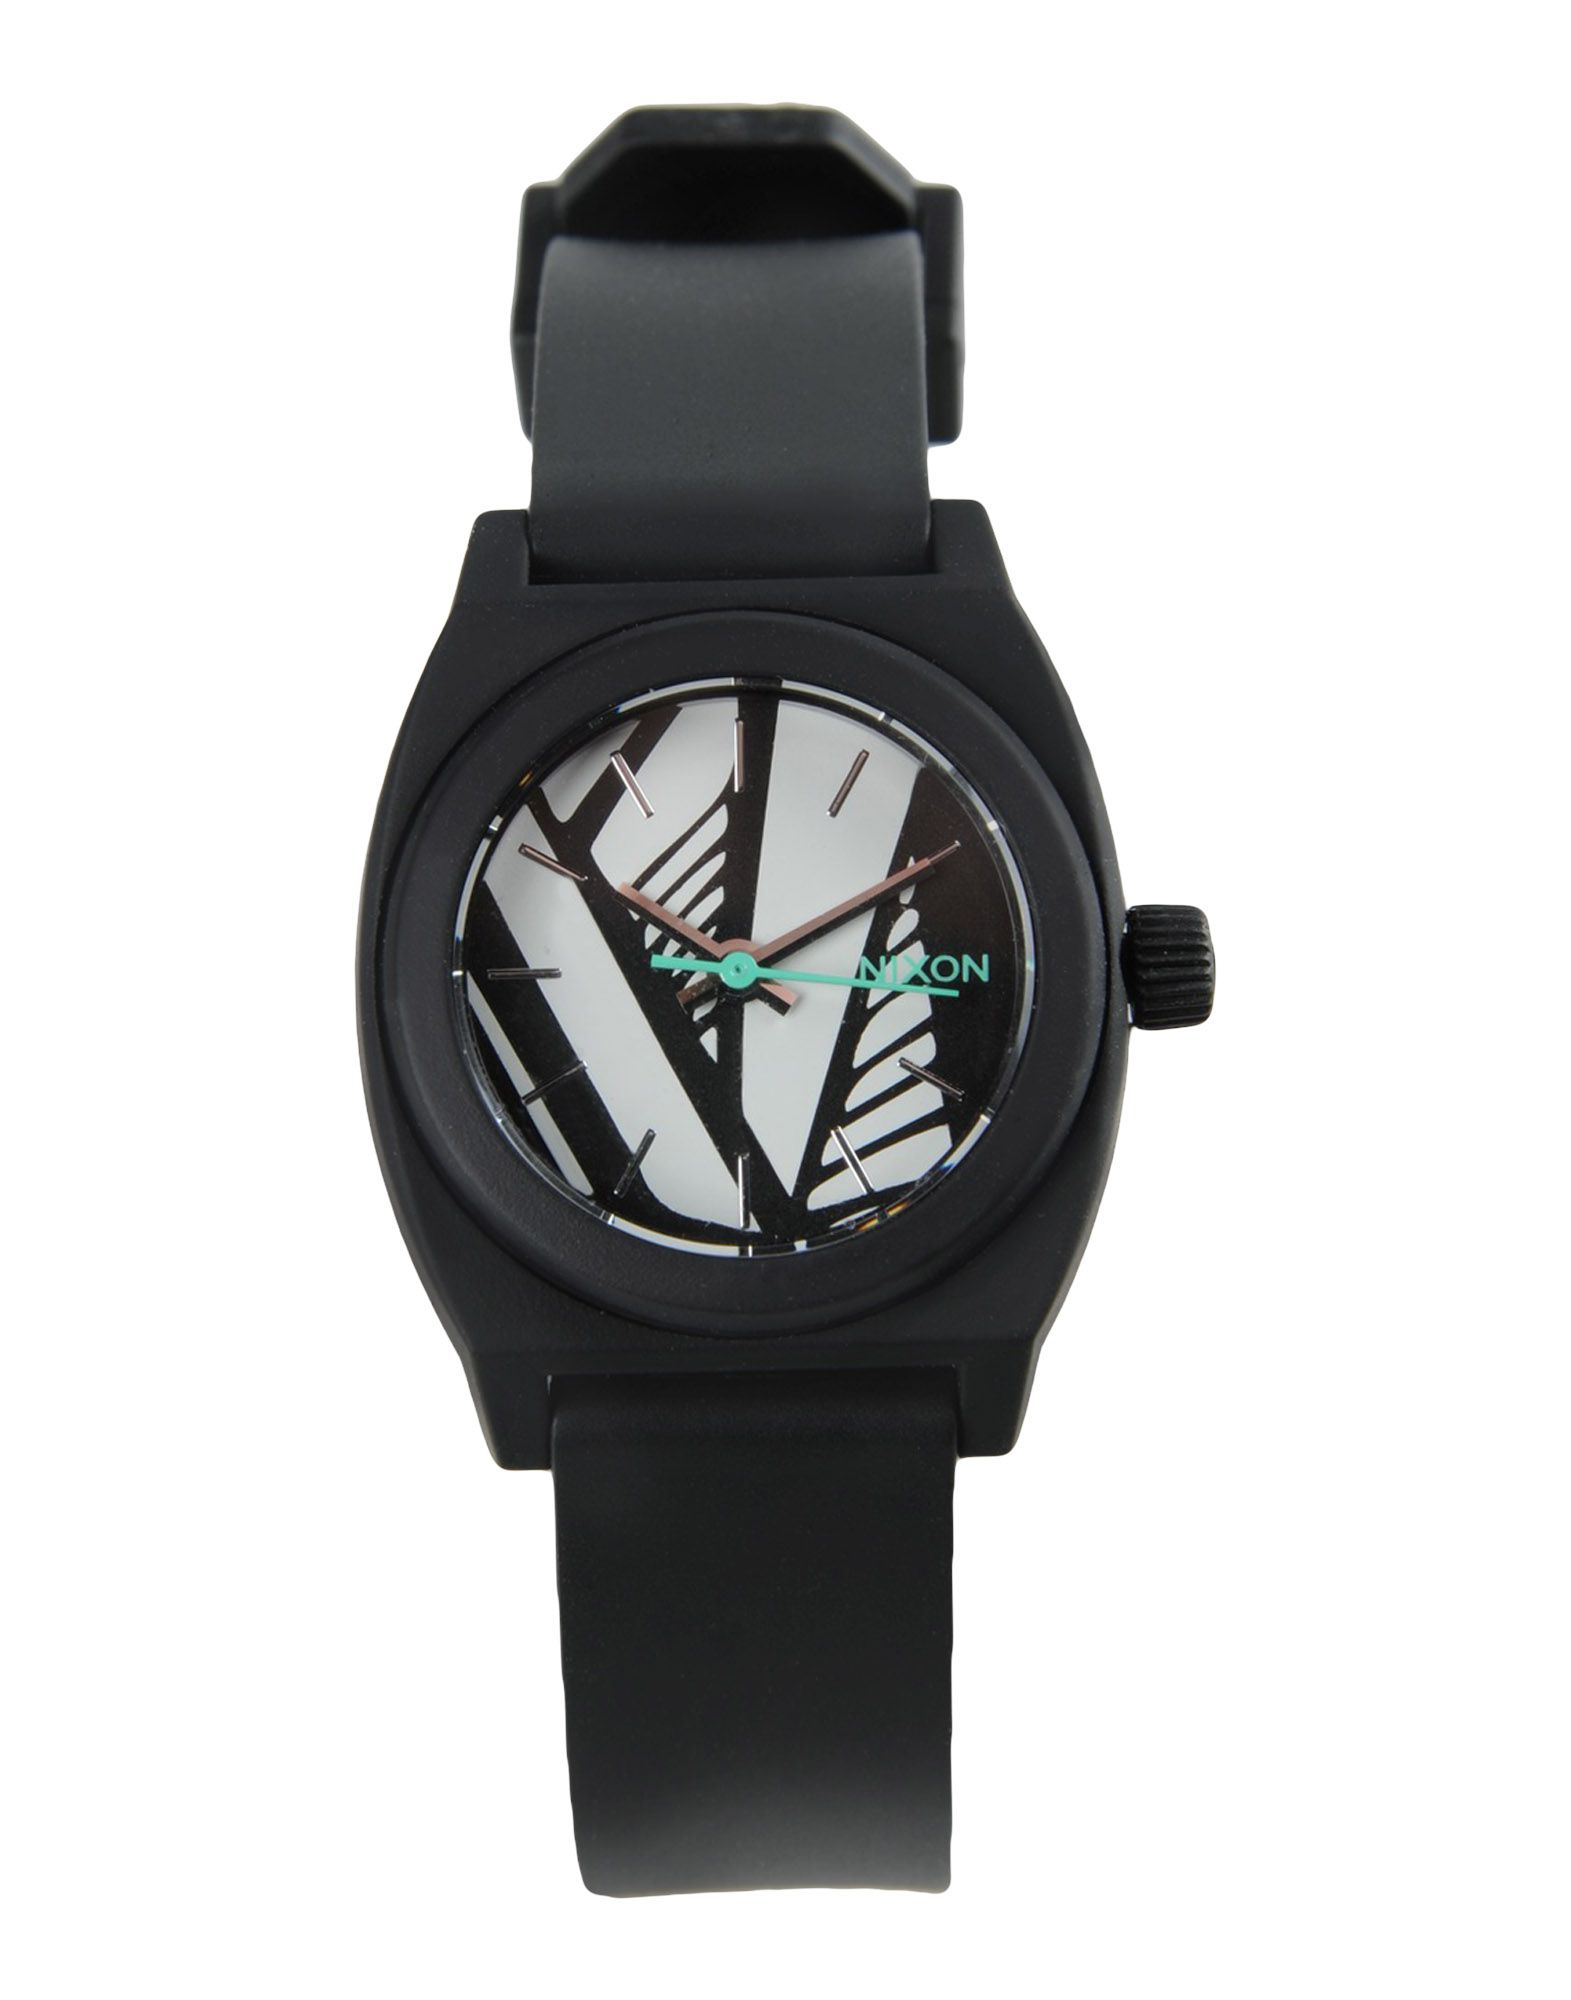 《送料無料》NIXON レディース 腕時計 ブラック ポリカーボネート A425 SMALL TIME TELLER P